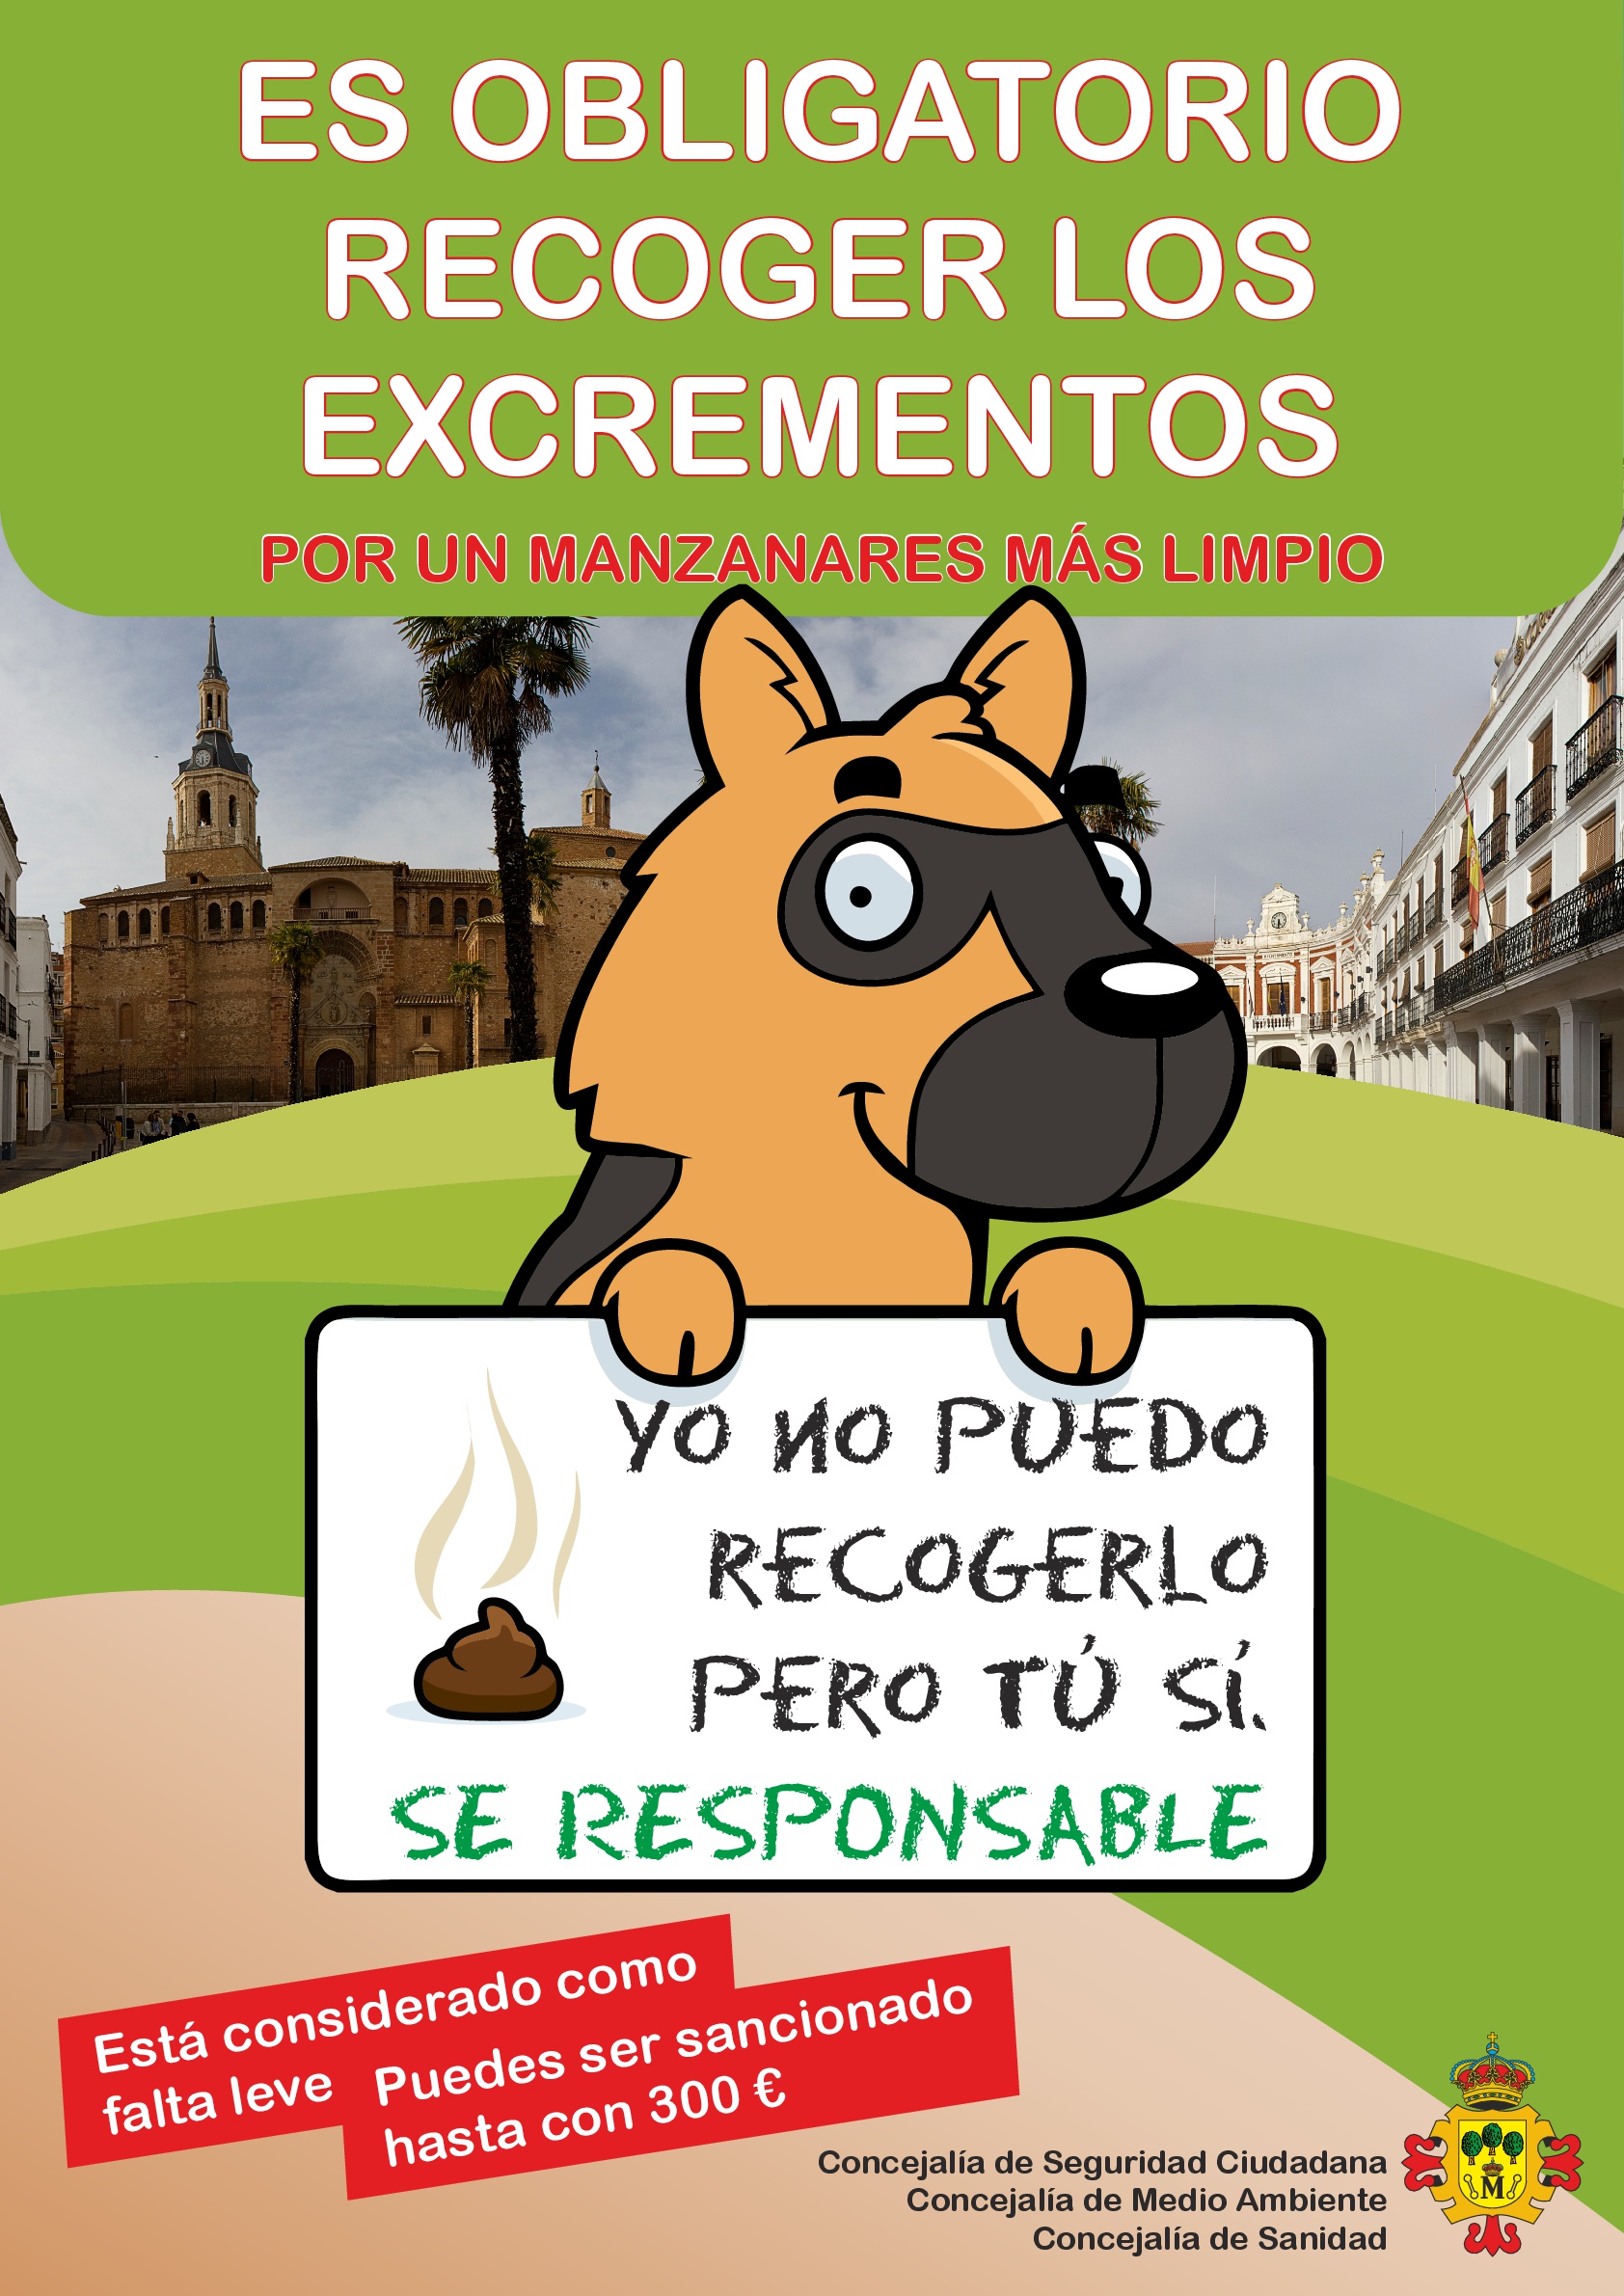 Campaña de concienciación e información sobre la obligación de recoger los excrementos de mascotas